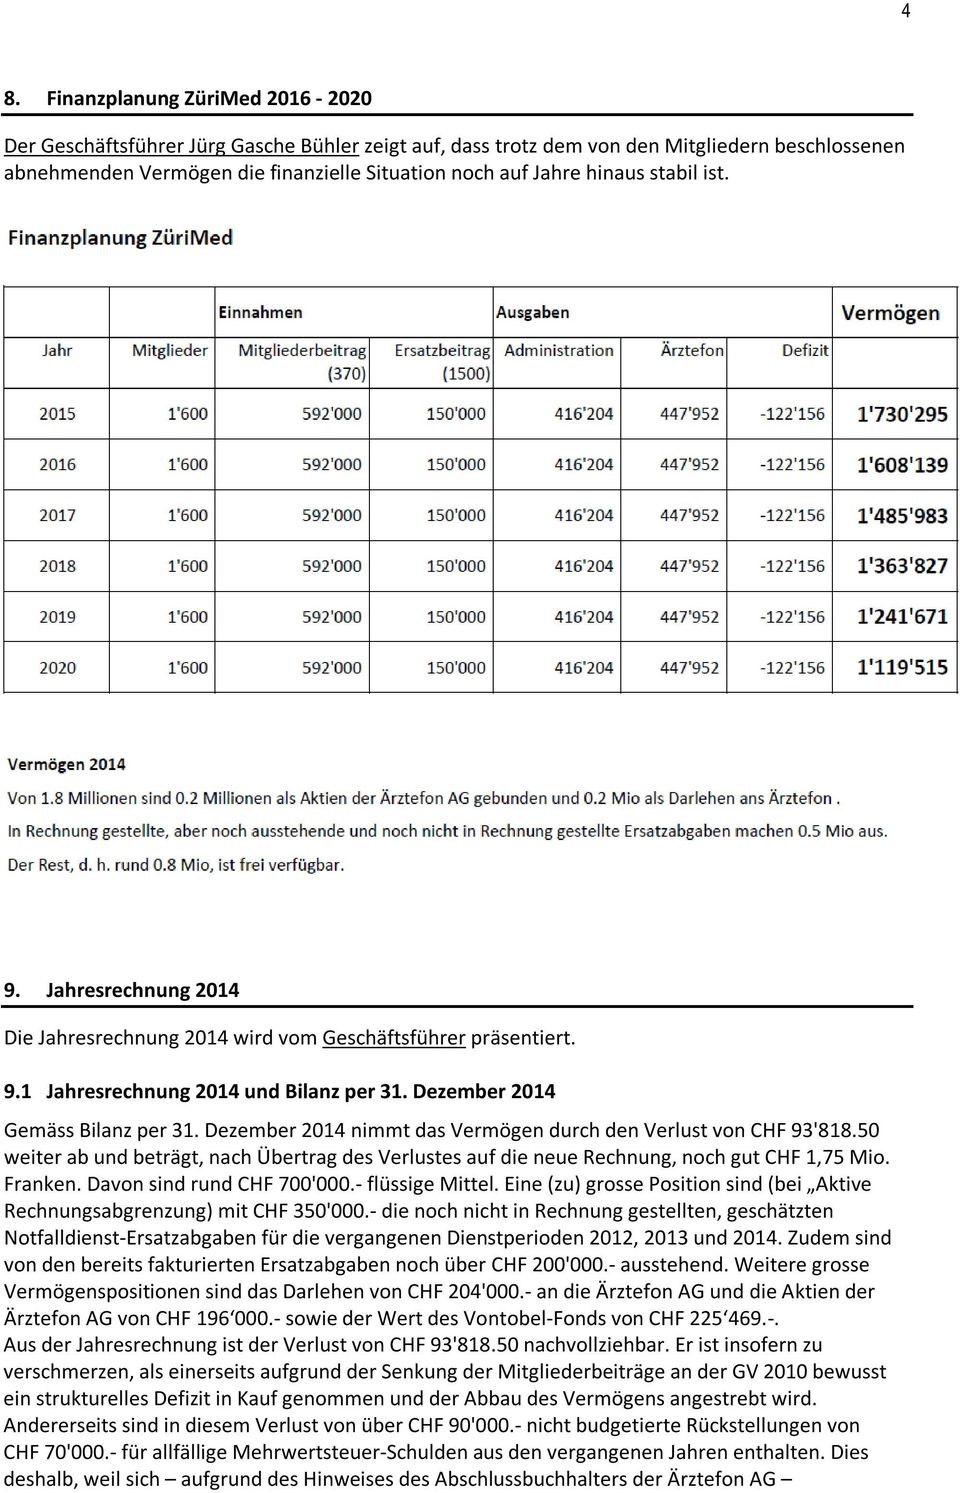 Dezember 2014 nimmt das Vermögen durch den Verlust von CHF 93'818.50 weiter ab und beträgt, nach Übertrag des Verlustes auf die neue Rechnung, noch gut CHF 1,75 Mio. Franken.